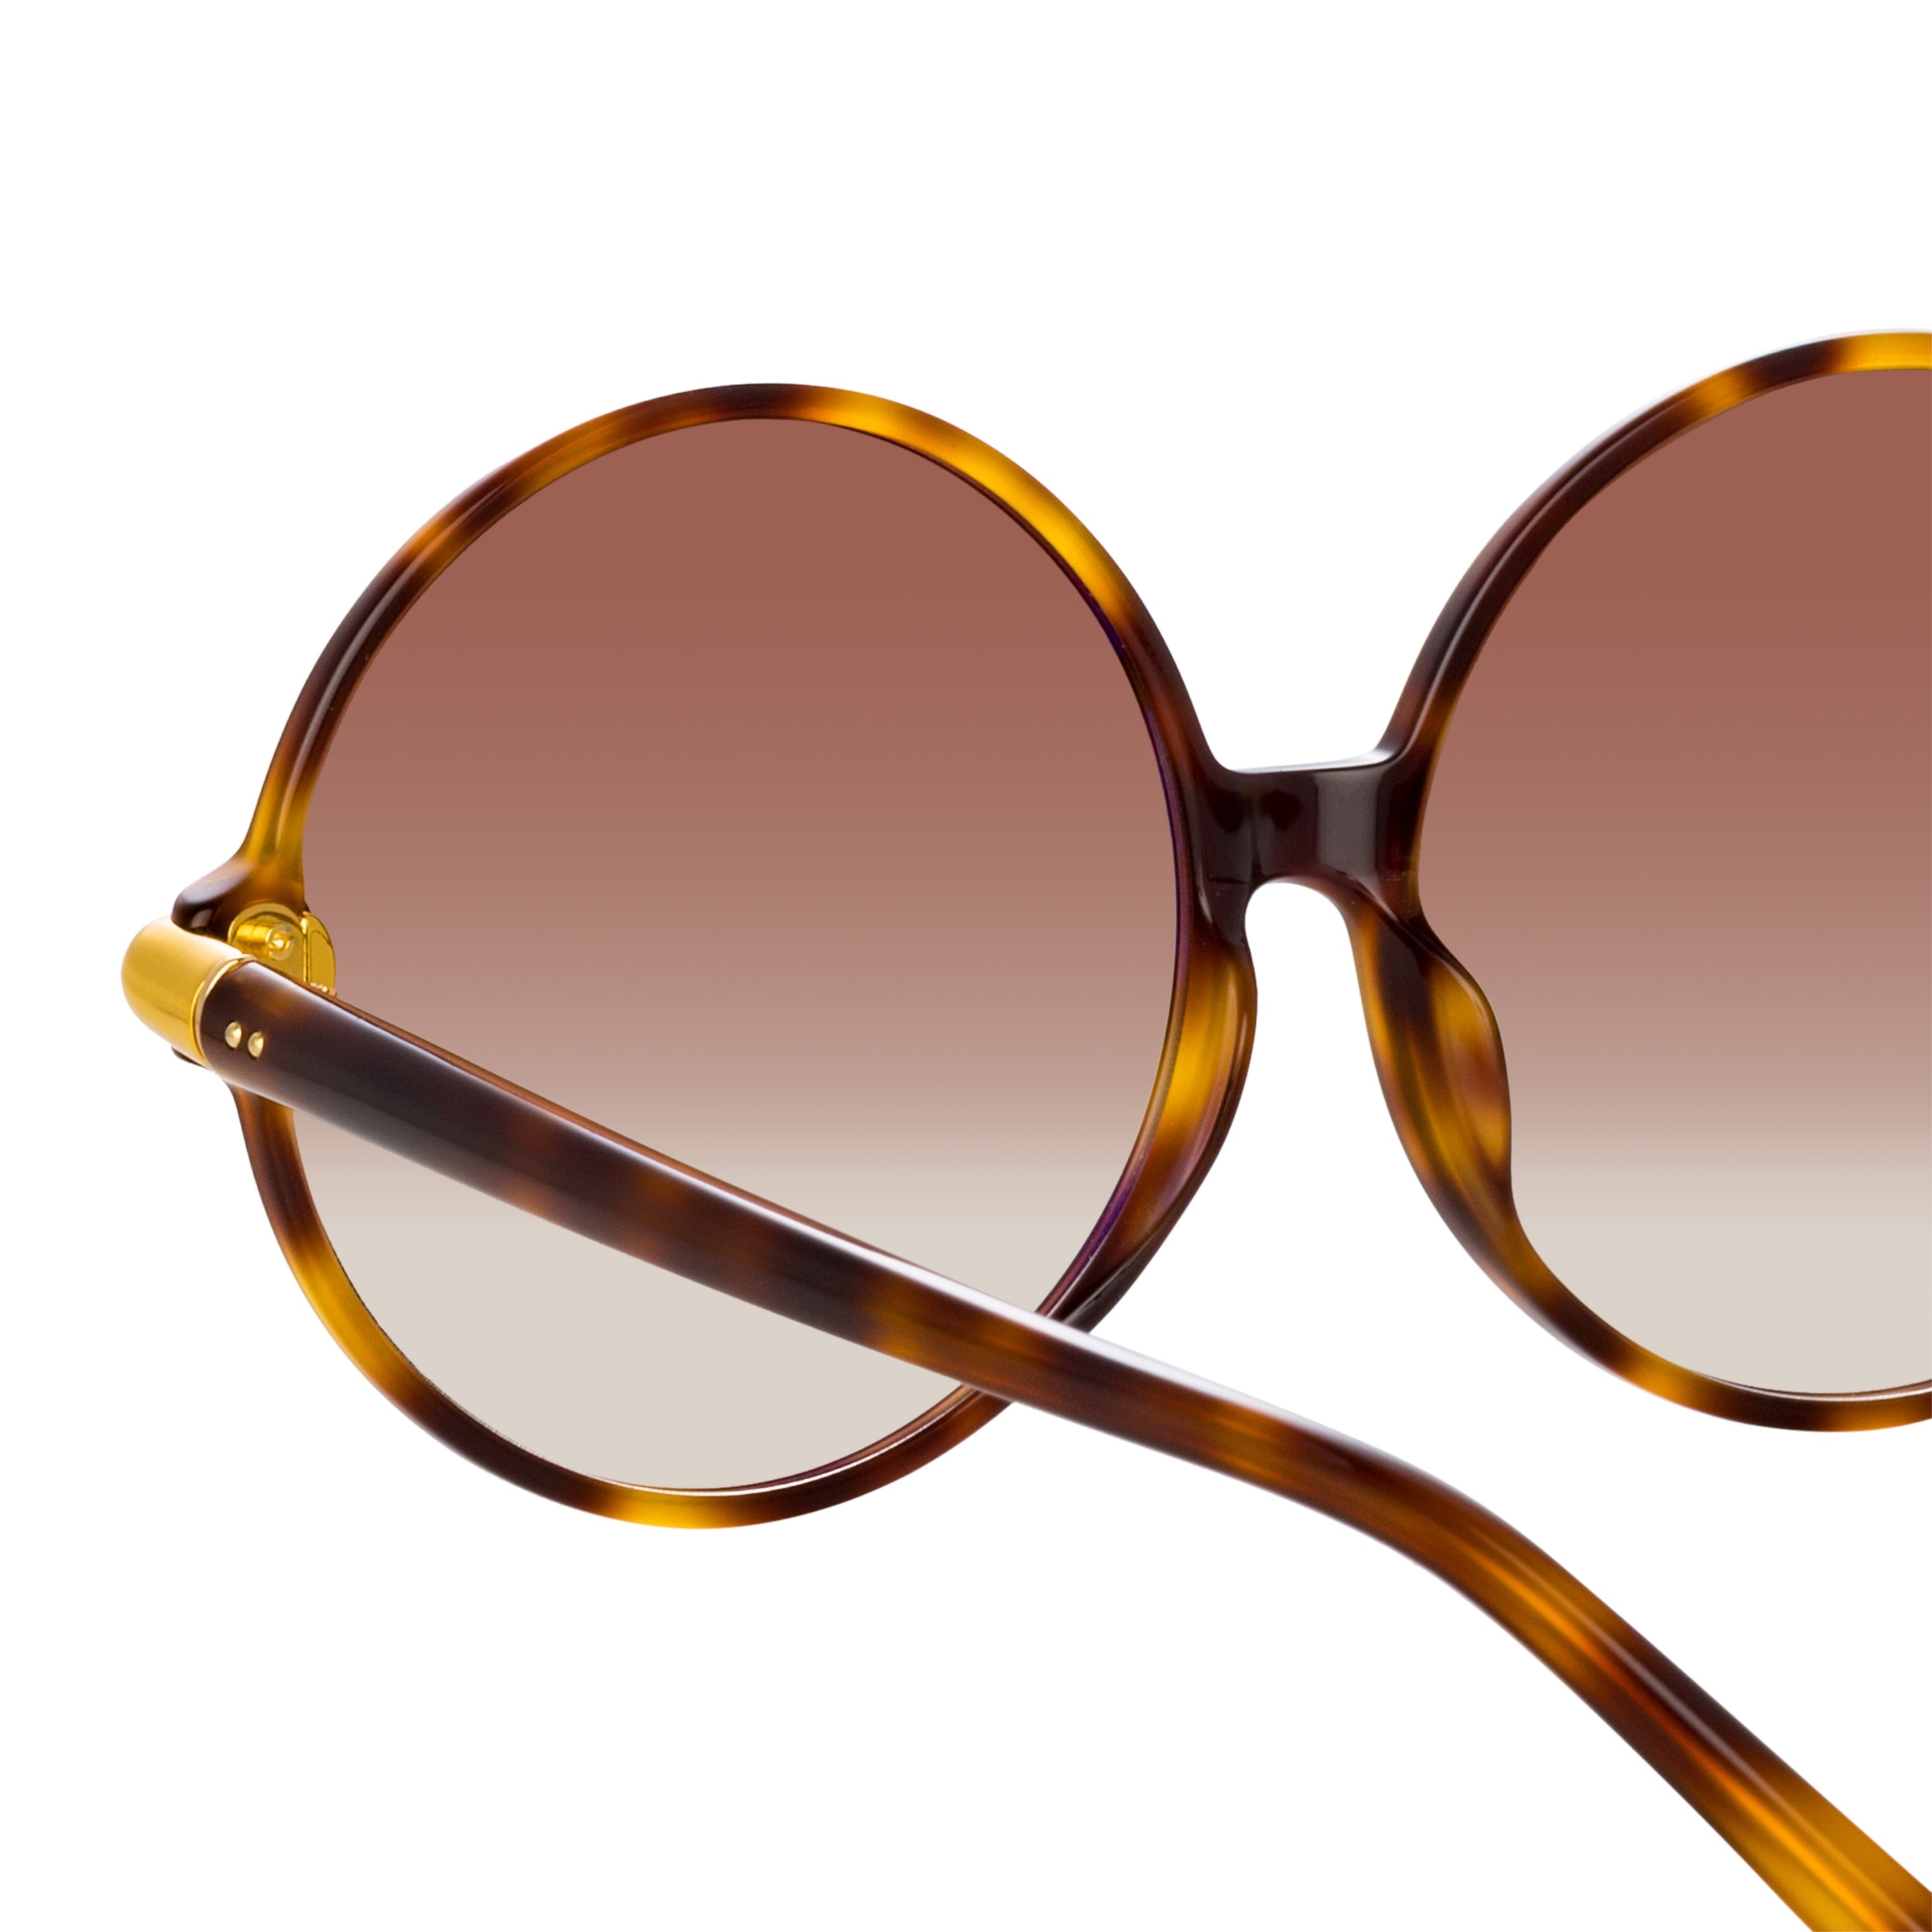 Color_LFL1259C2SUN - Victoria Round Sunglasses in Tortoiseshell